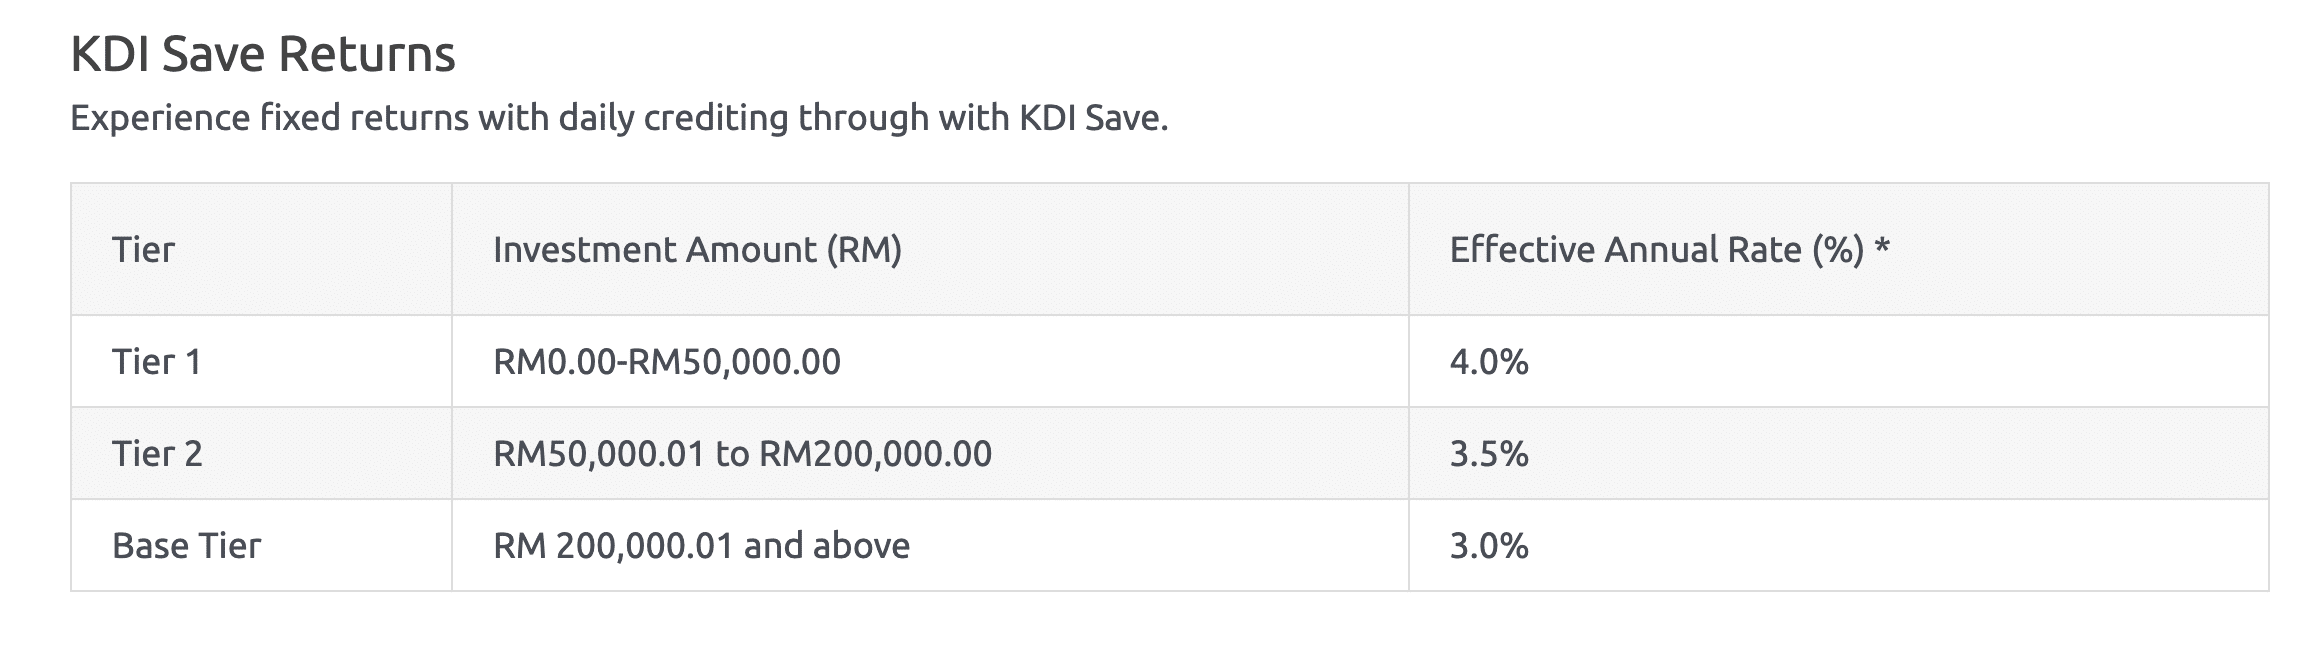 KDI Save returns